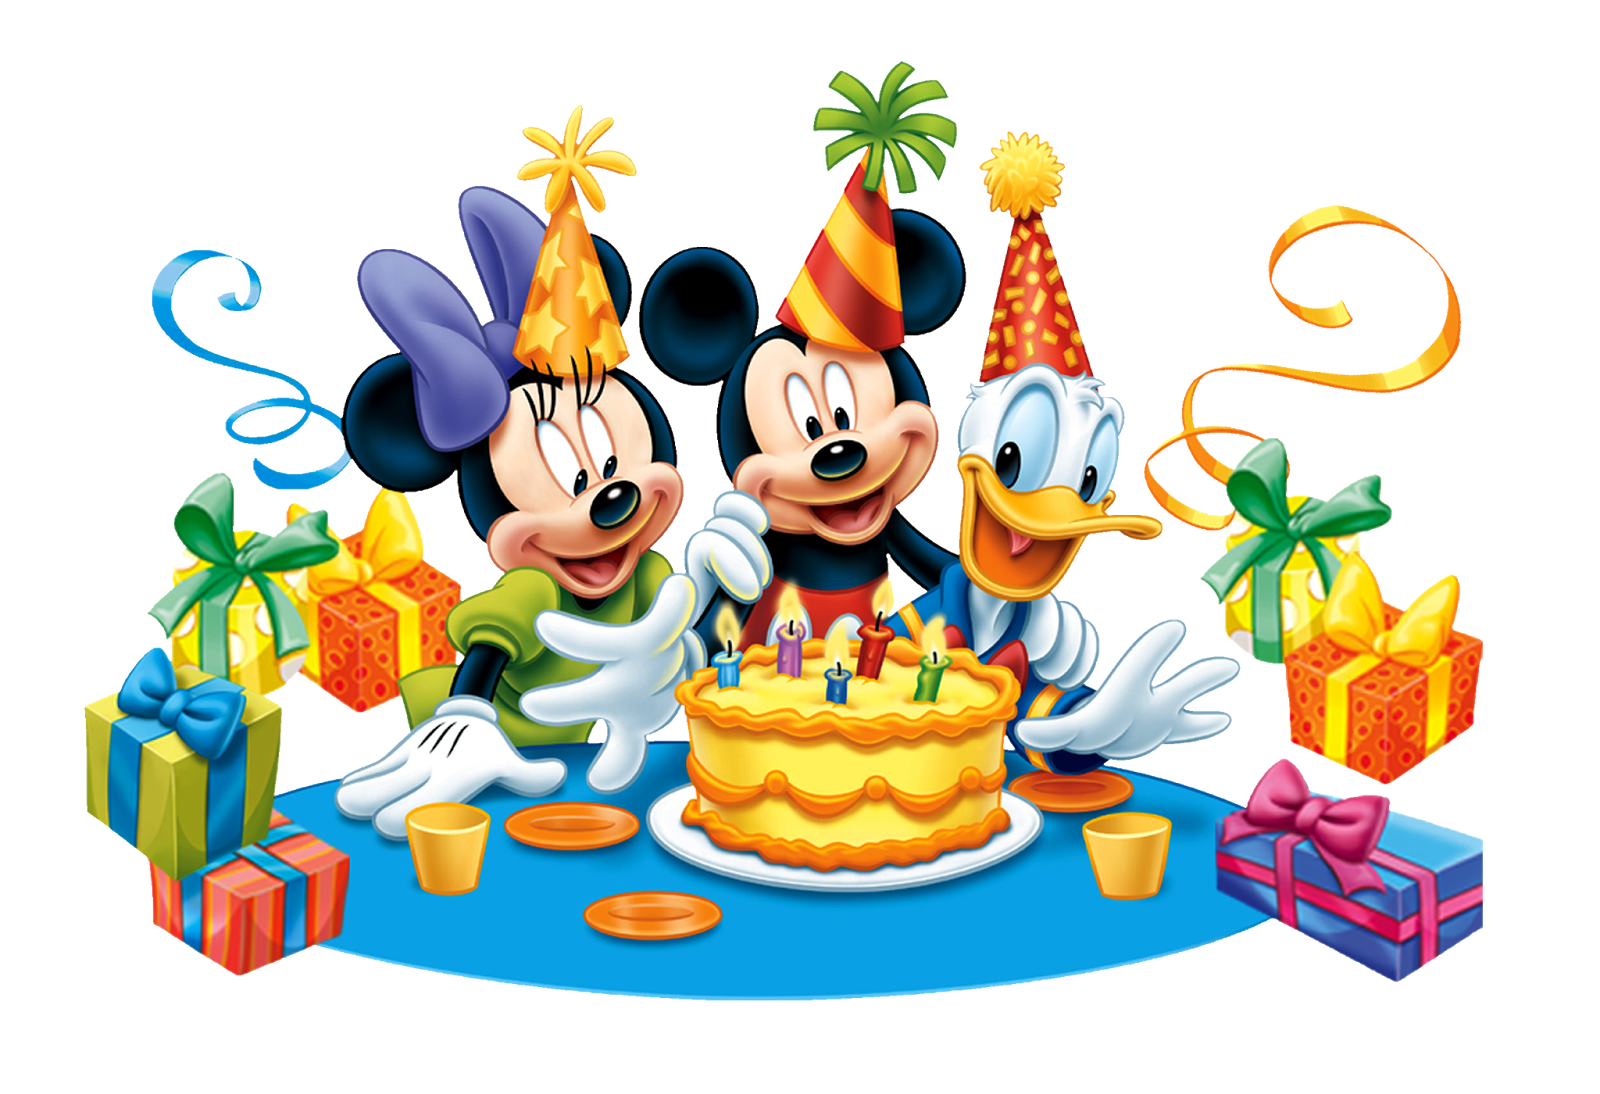 День рождение 27 12. День рождения Микки Мауса (Mickey Mouse Birthday). С днём рождения ребёнку. Картина с днём рождения. Детская открытка с днем рождения.